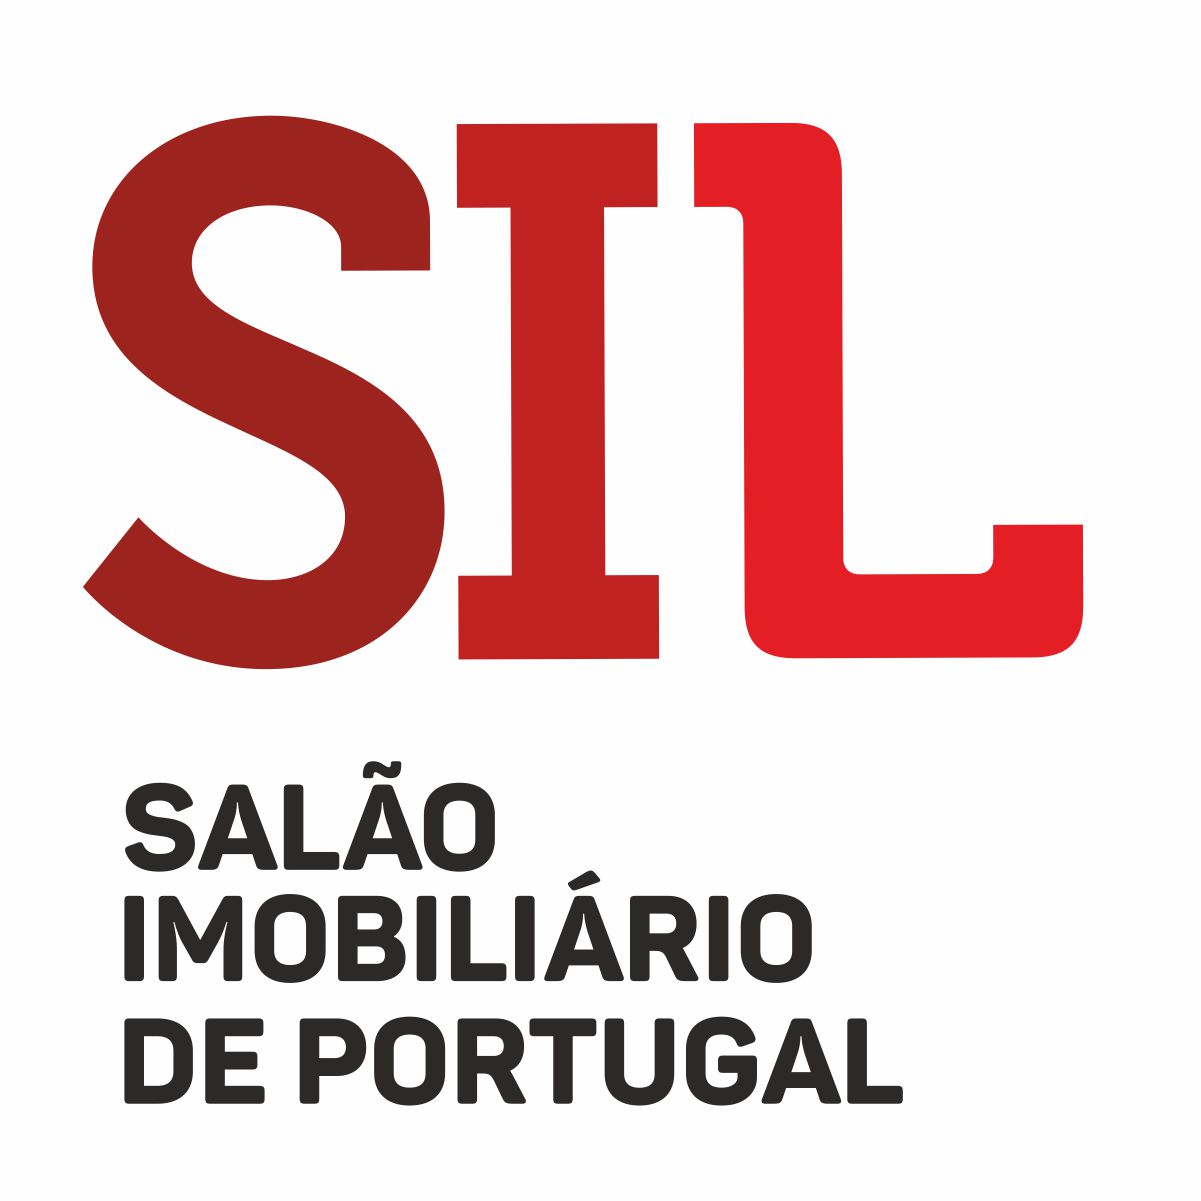 Salão Imobiliário de Portugal de 07 a 10 de Outubro 2021